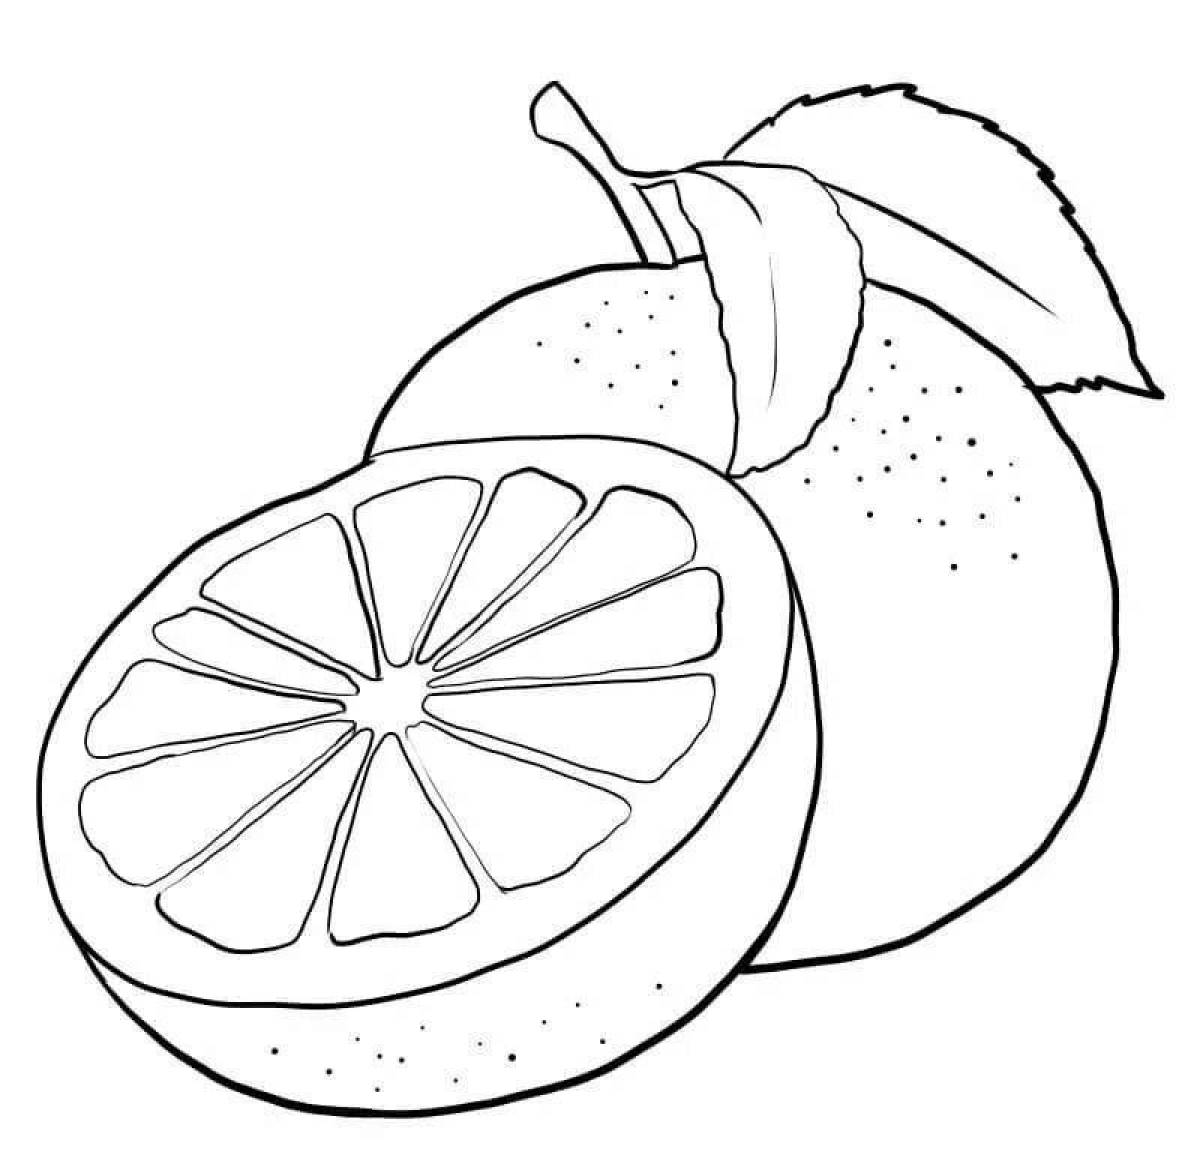 Раскраска гипнотический грейпфрут